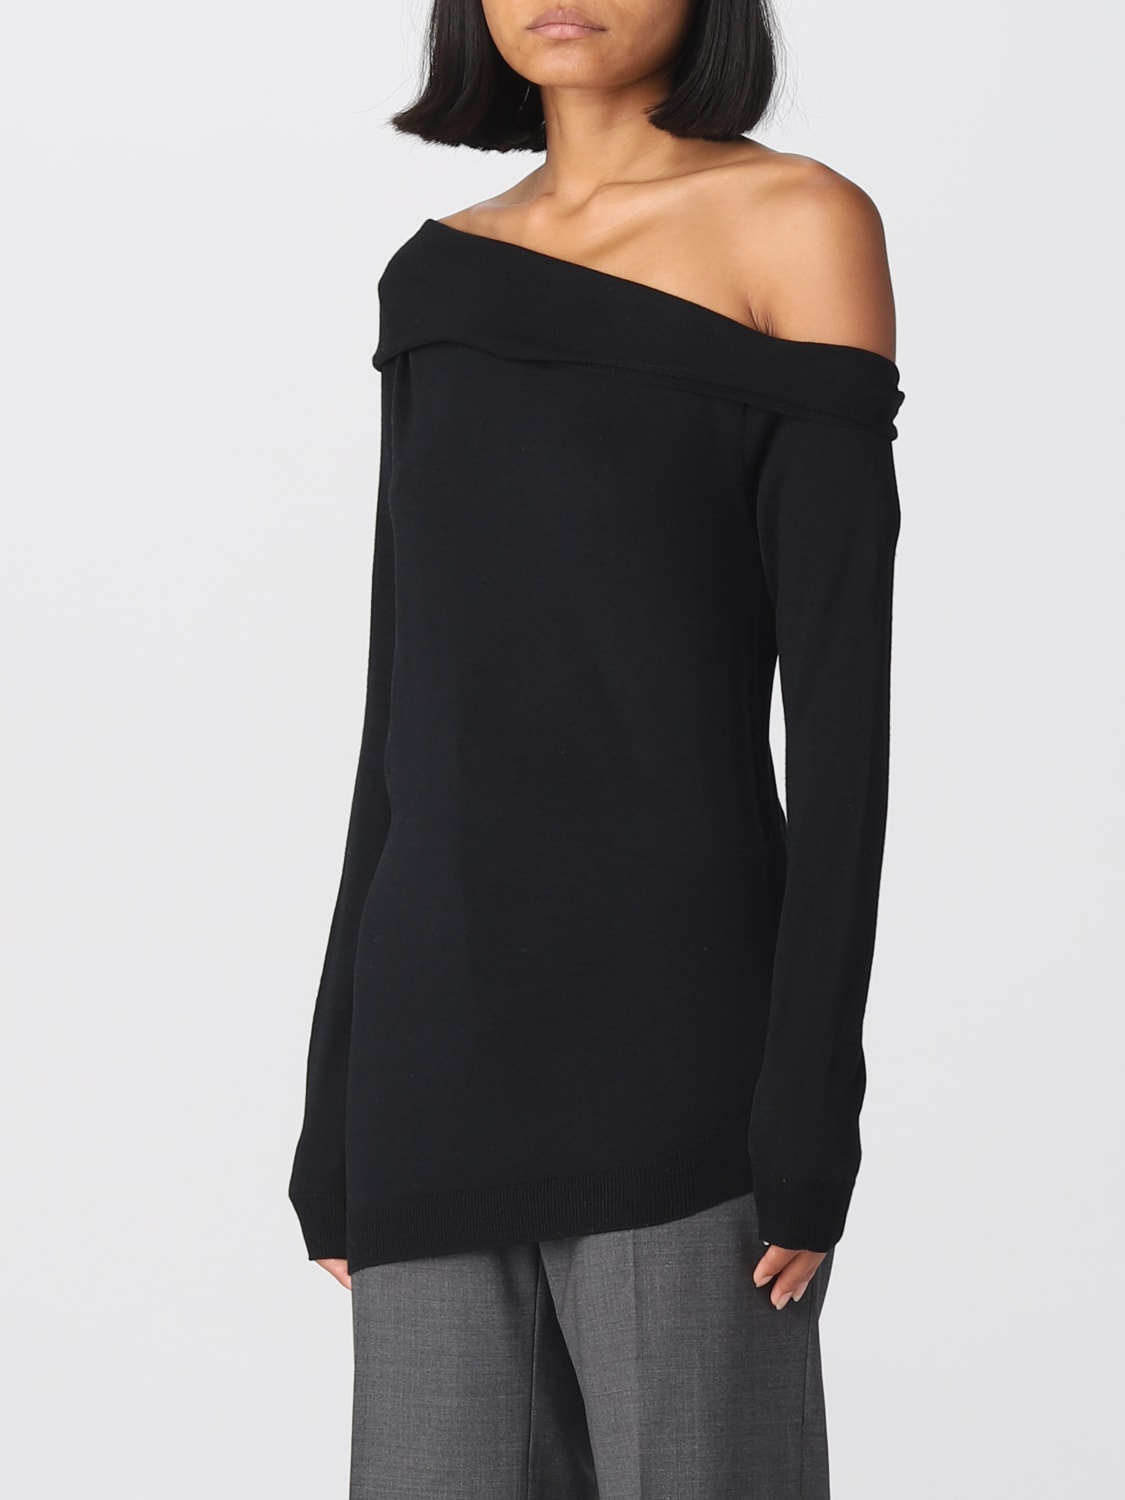 ALBERTA FERRETTI: sweater for woman - Black | Alberta Ferretti sweater ...